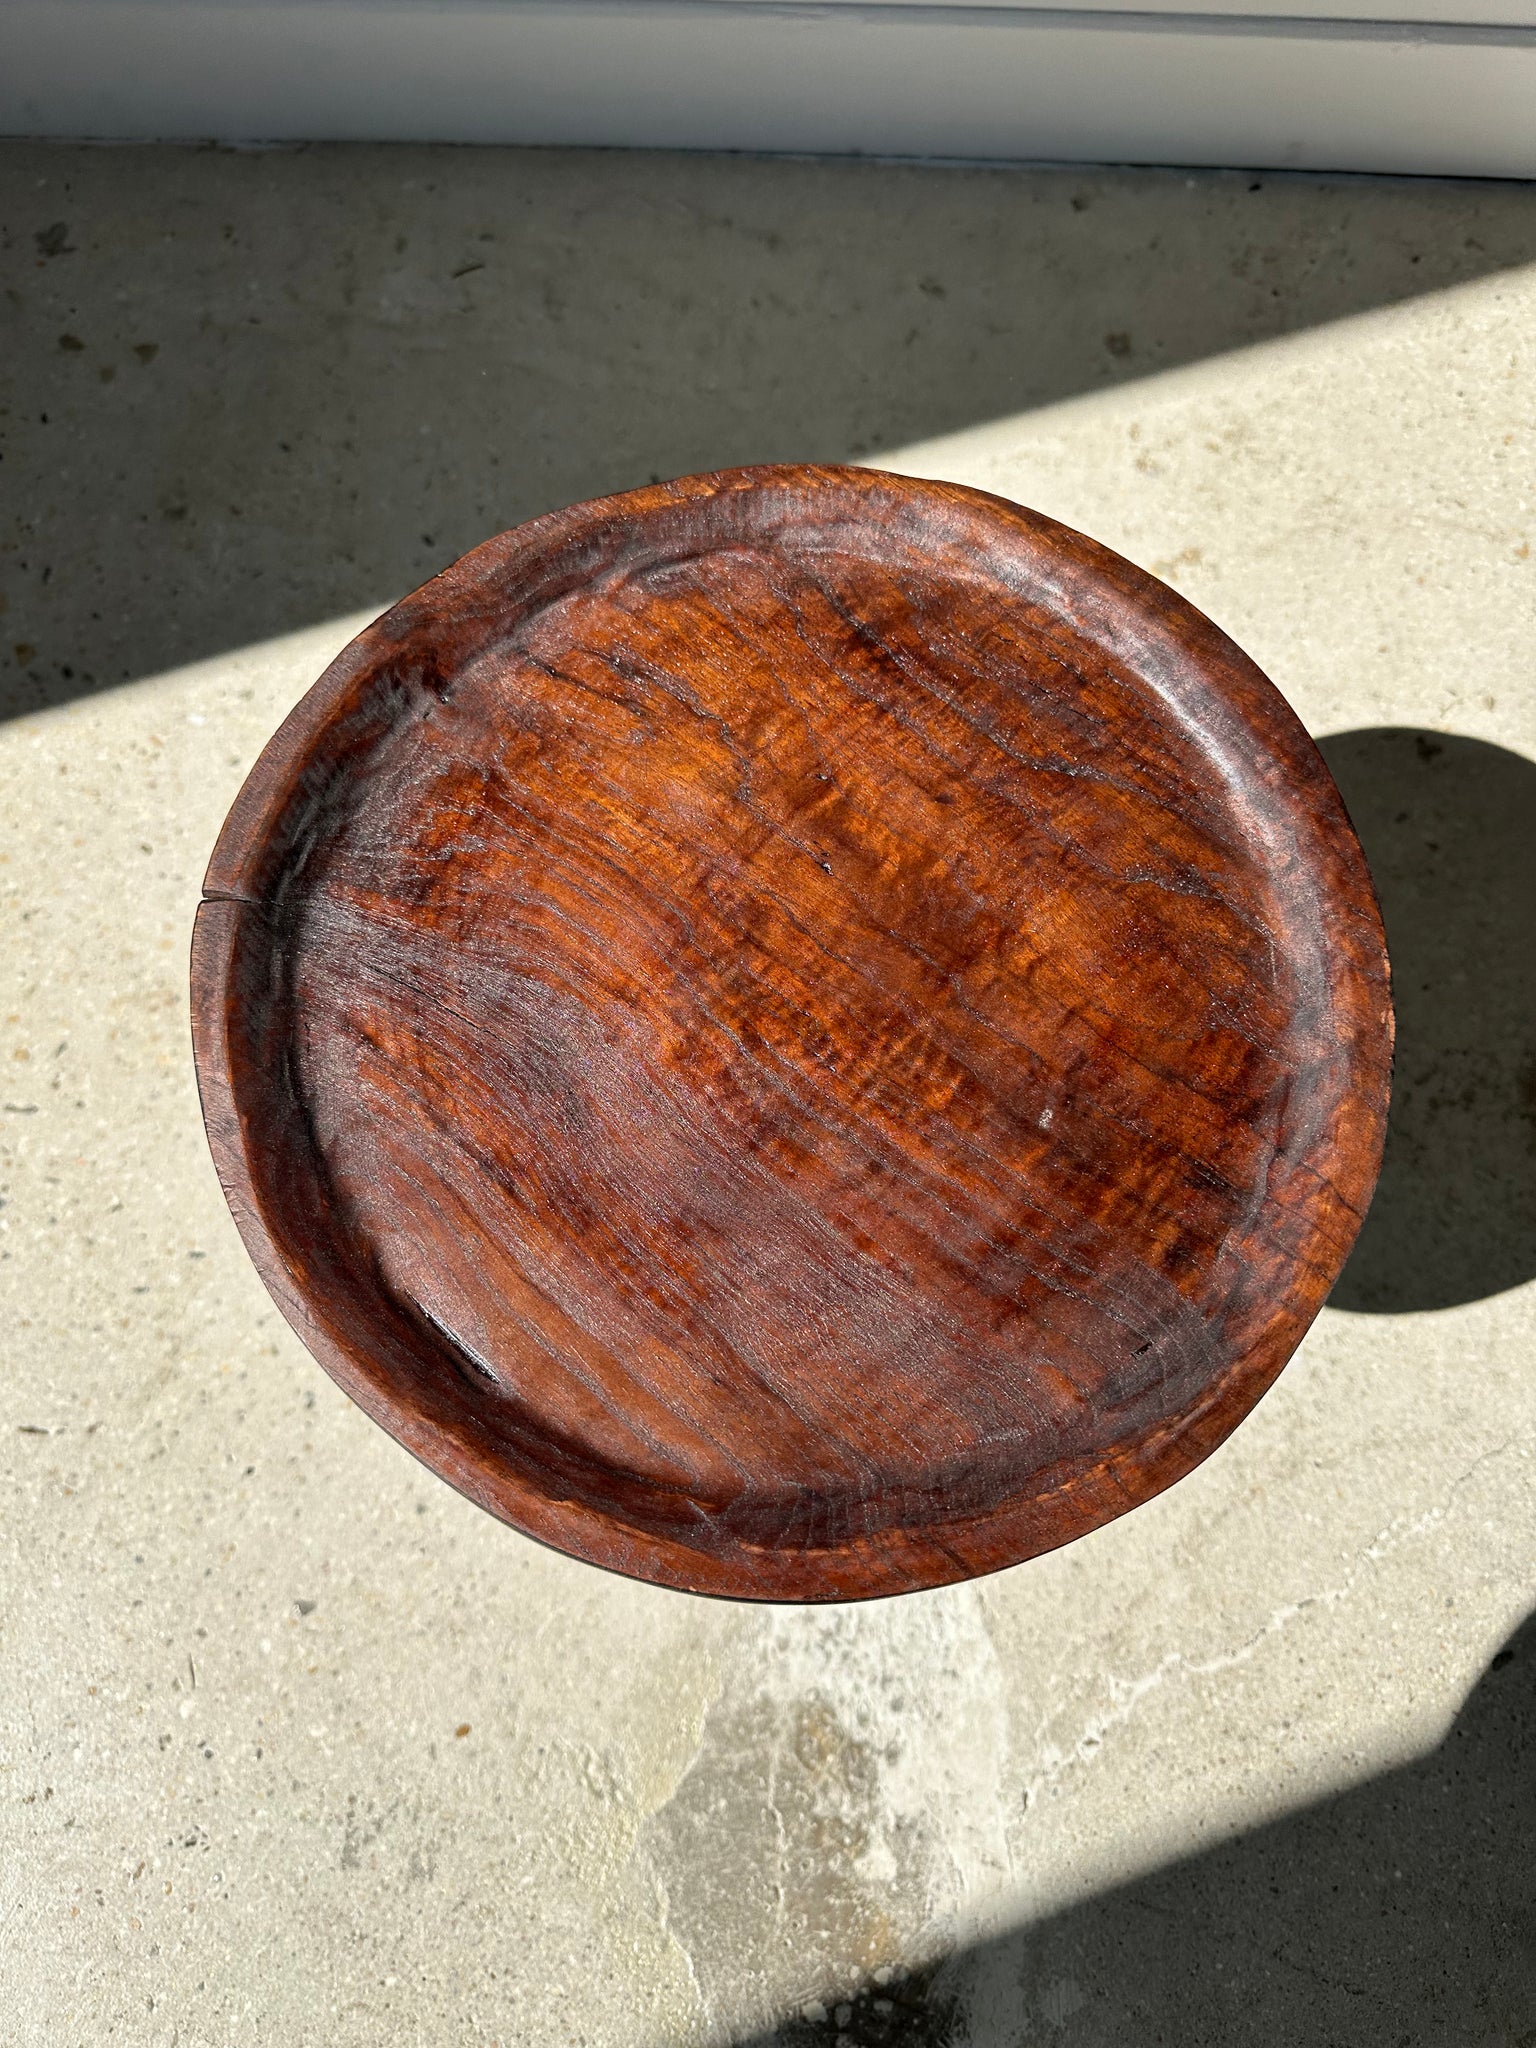 Petit tabouret en bois massif brun assise circulaire creuse H:35cm D:30cm